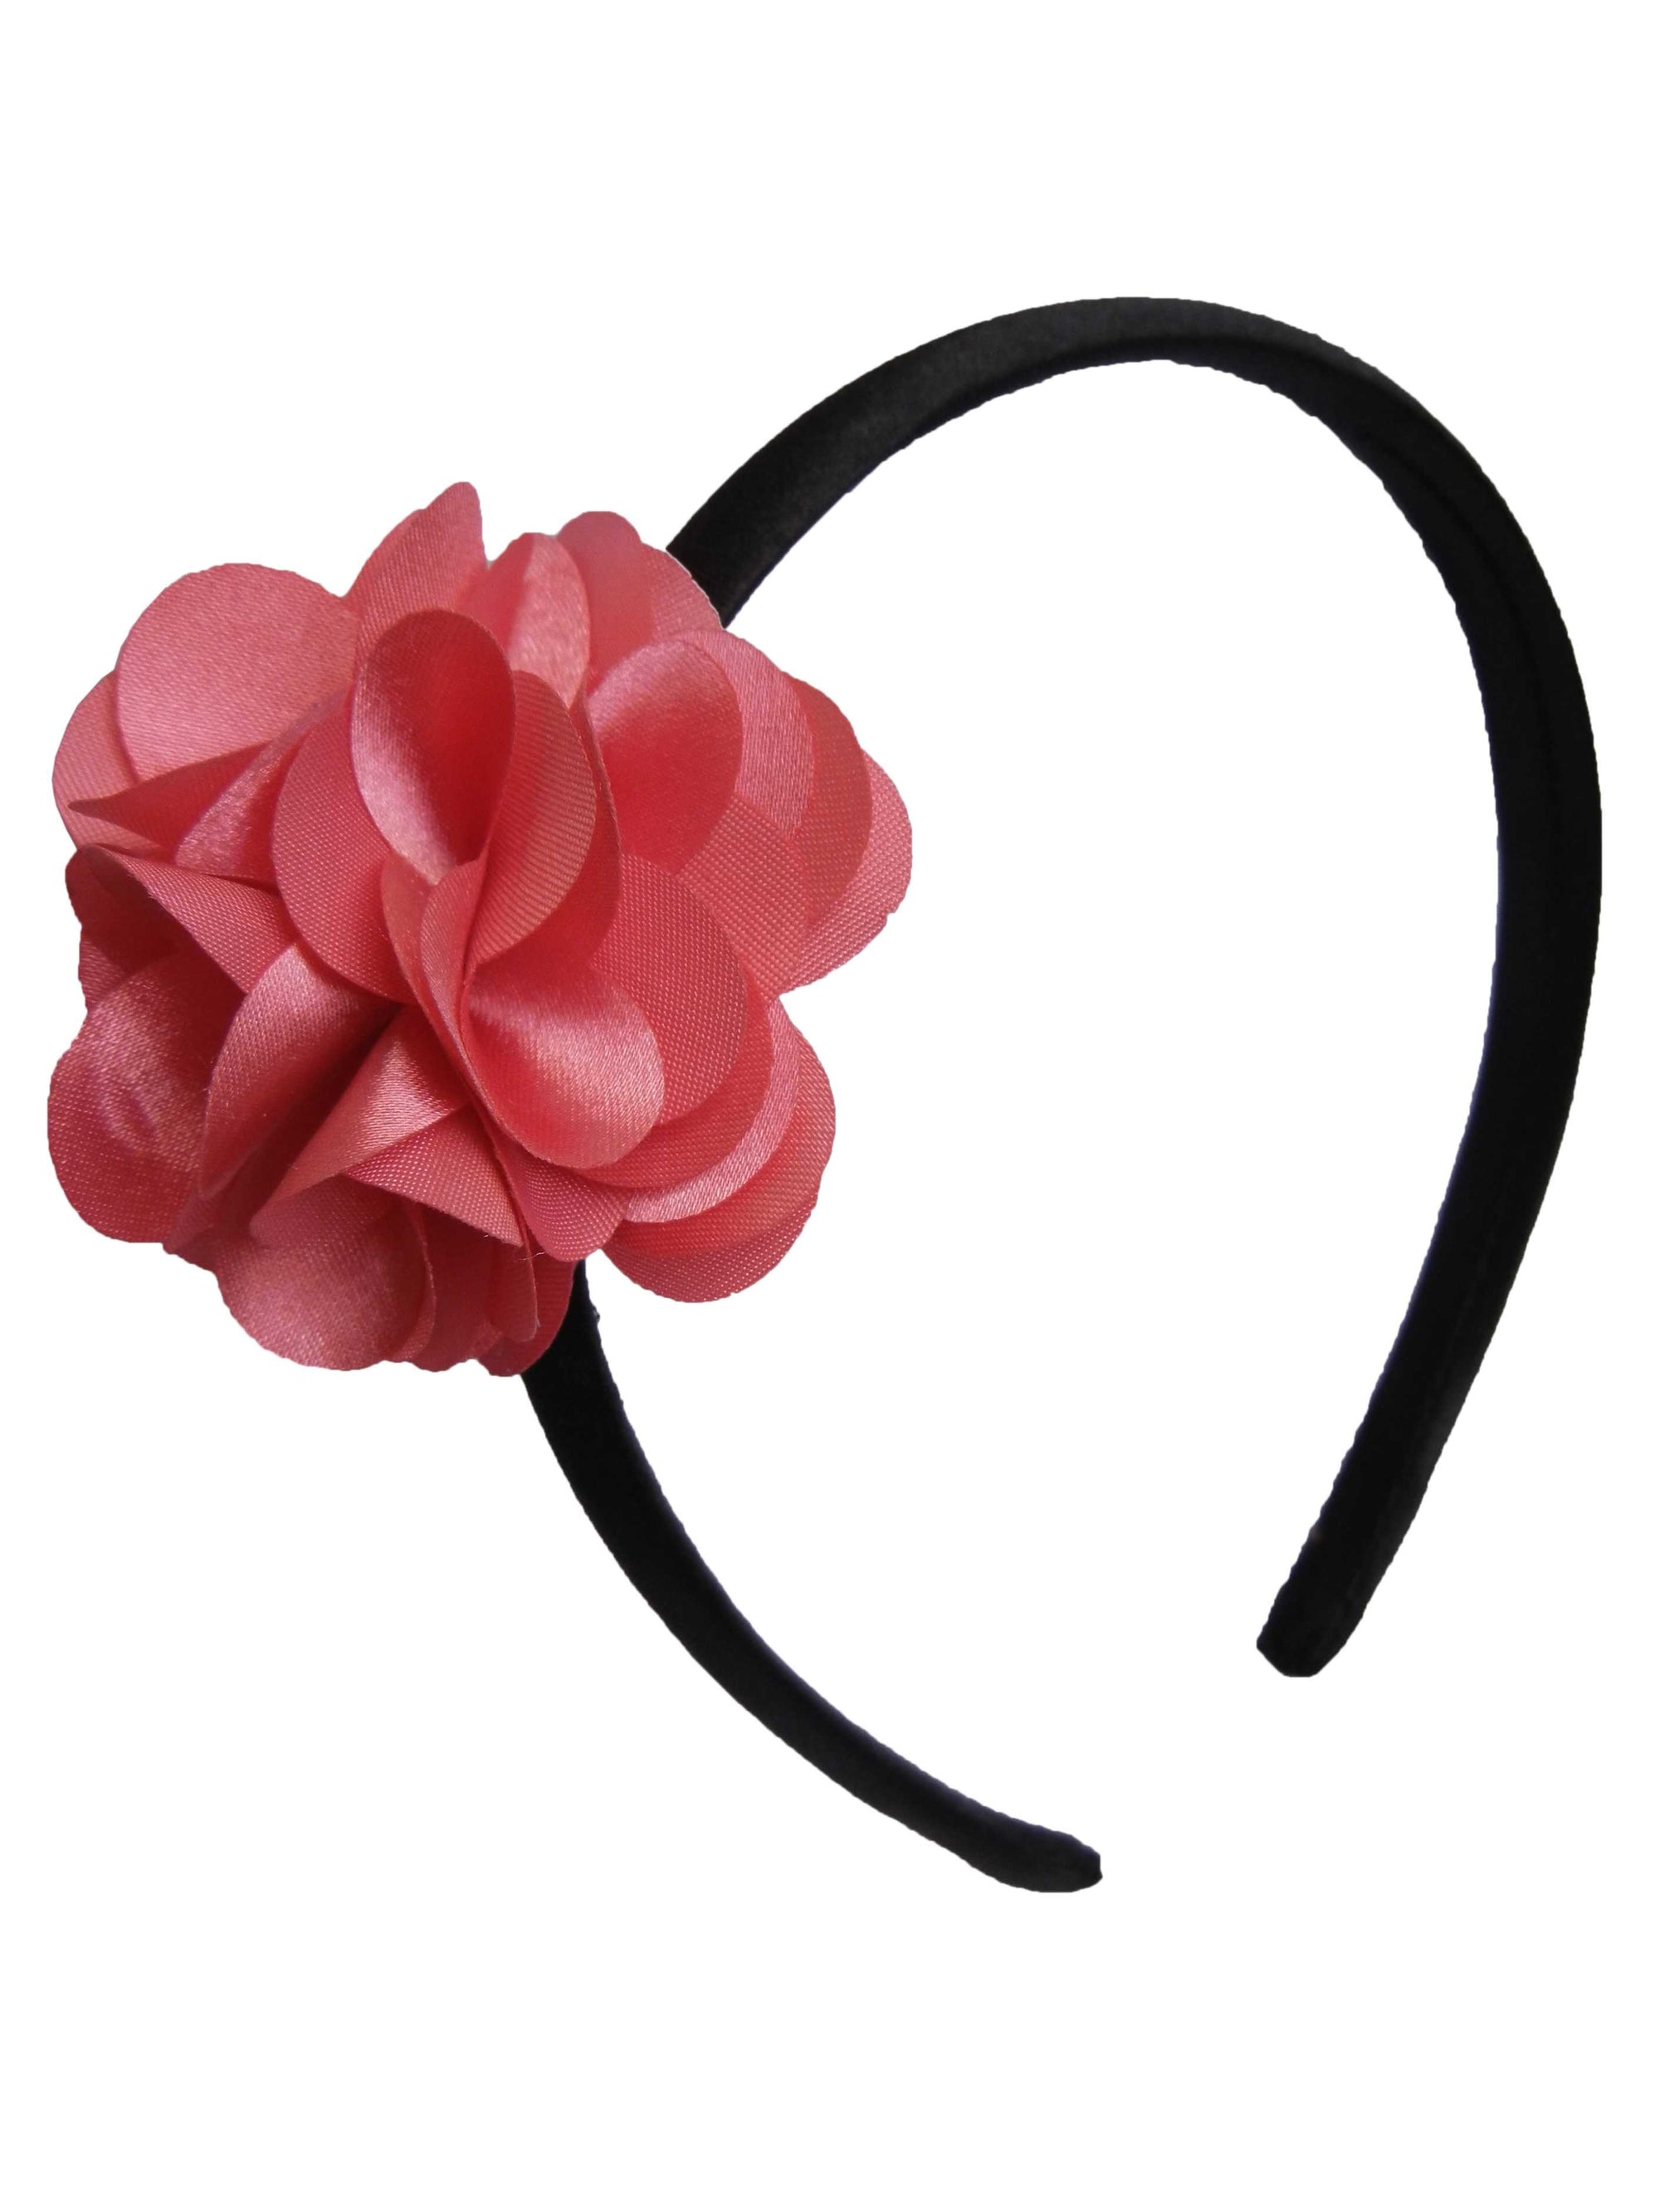 Onpink flower on Black Satin hair bands for girls